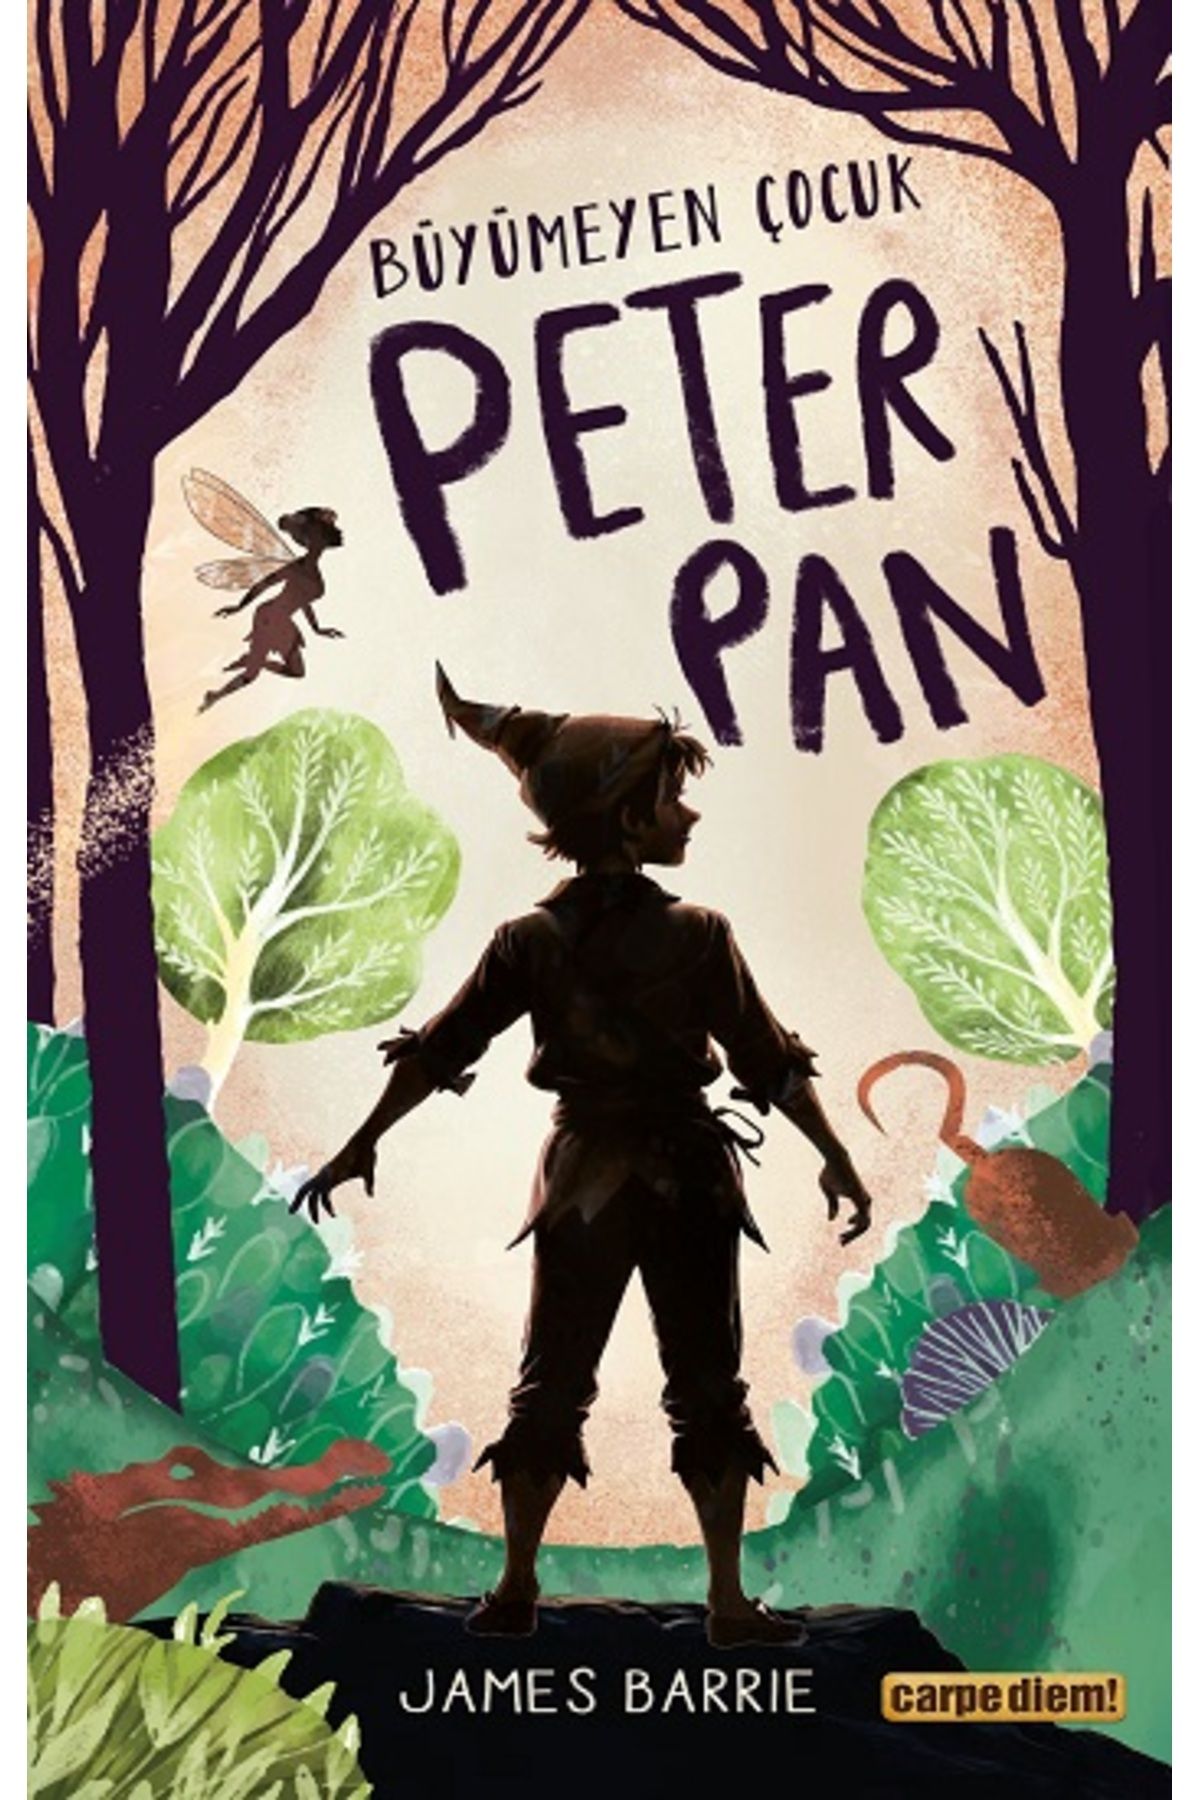 Carpe Diem Kitapları Büyümeyen Çocuk Peter Pan kitabı - James Matthew Barrie - Carpe Diem Kitapları